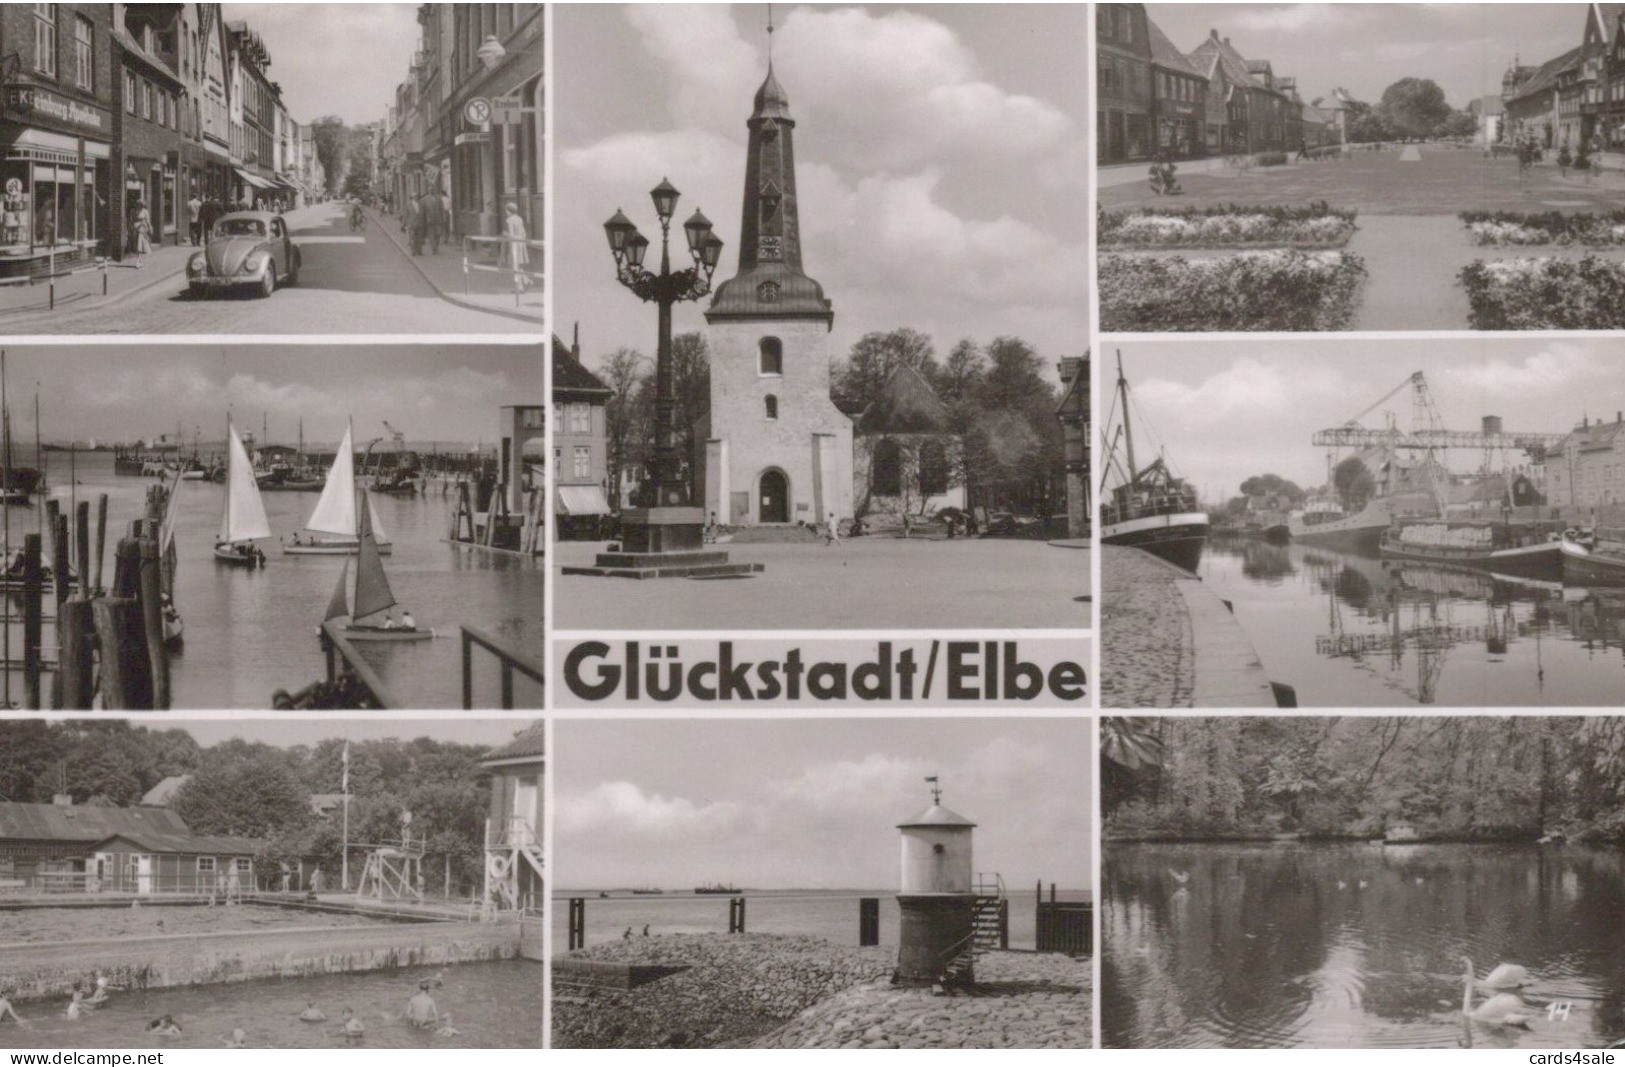 Glückstadt/Elbe - Glueckstadt